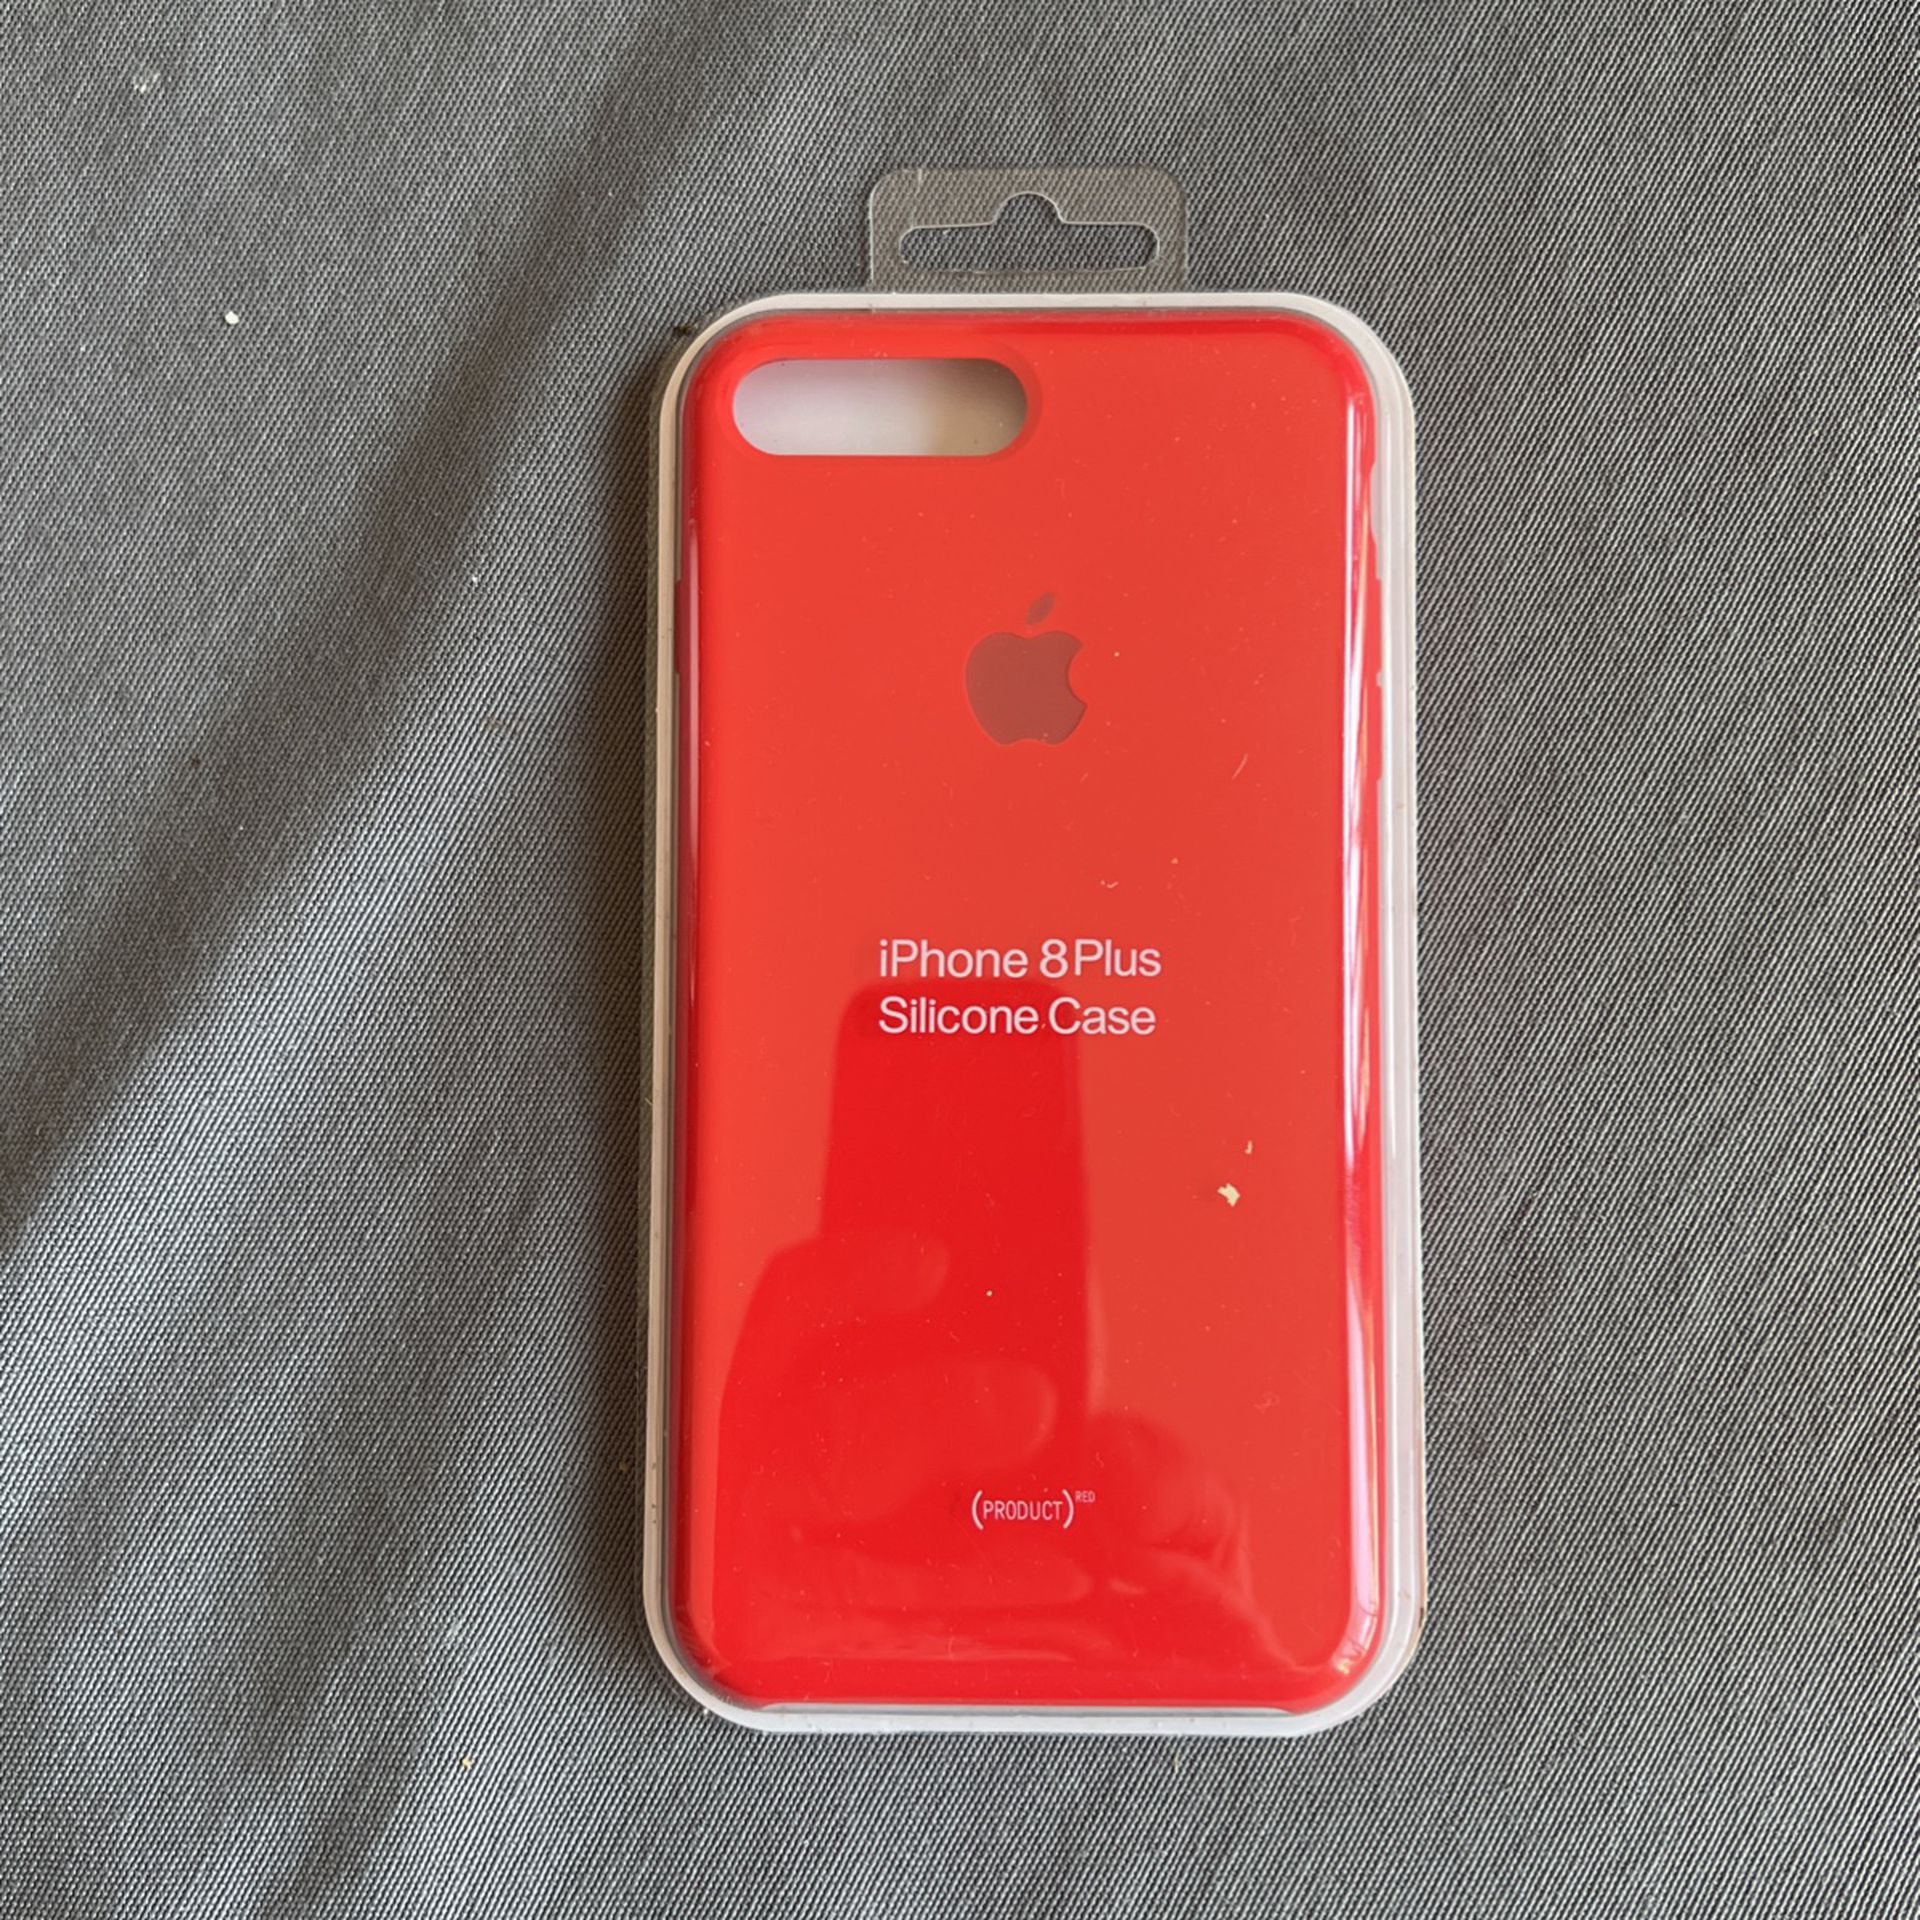 Iphone 8 Plus Silicon Case